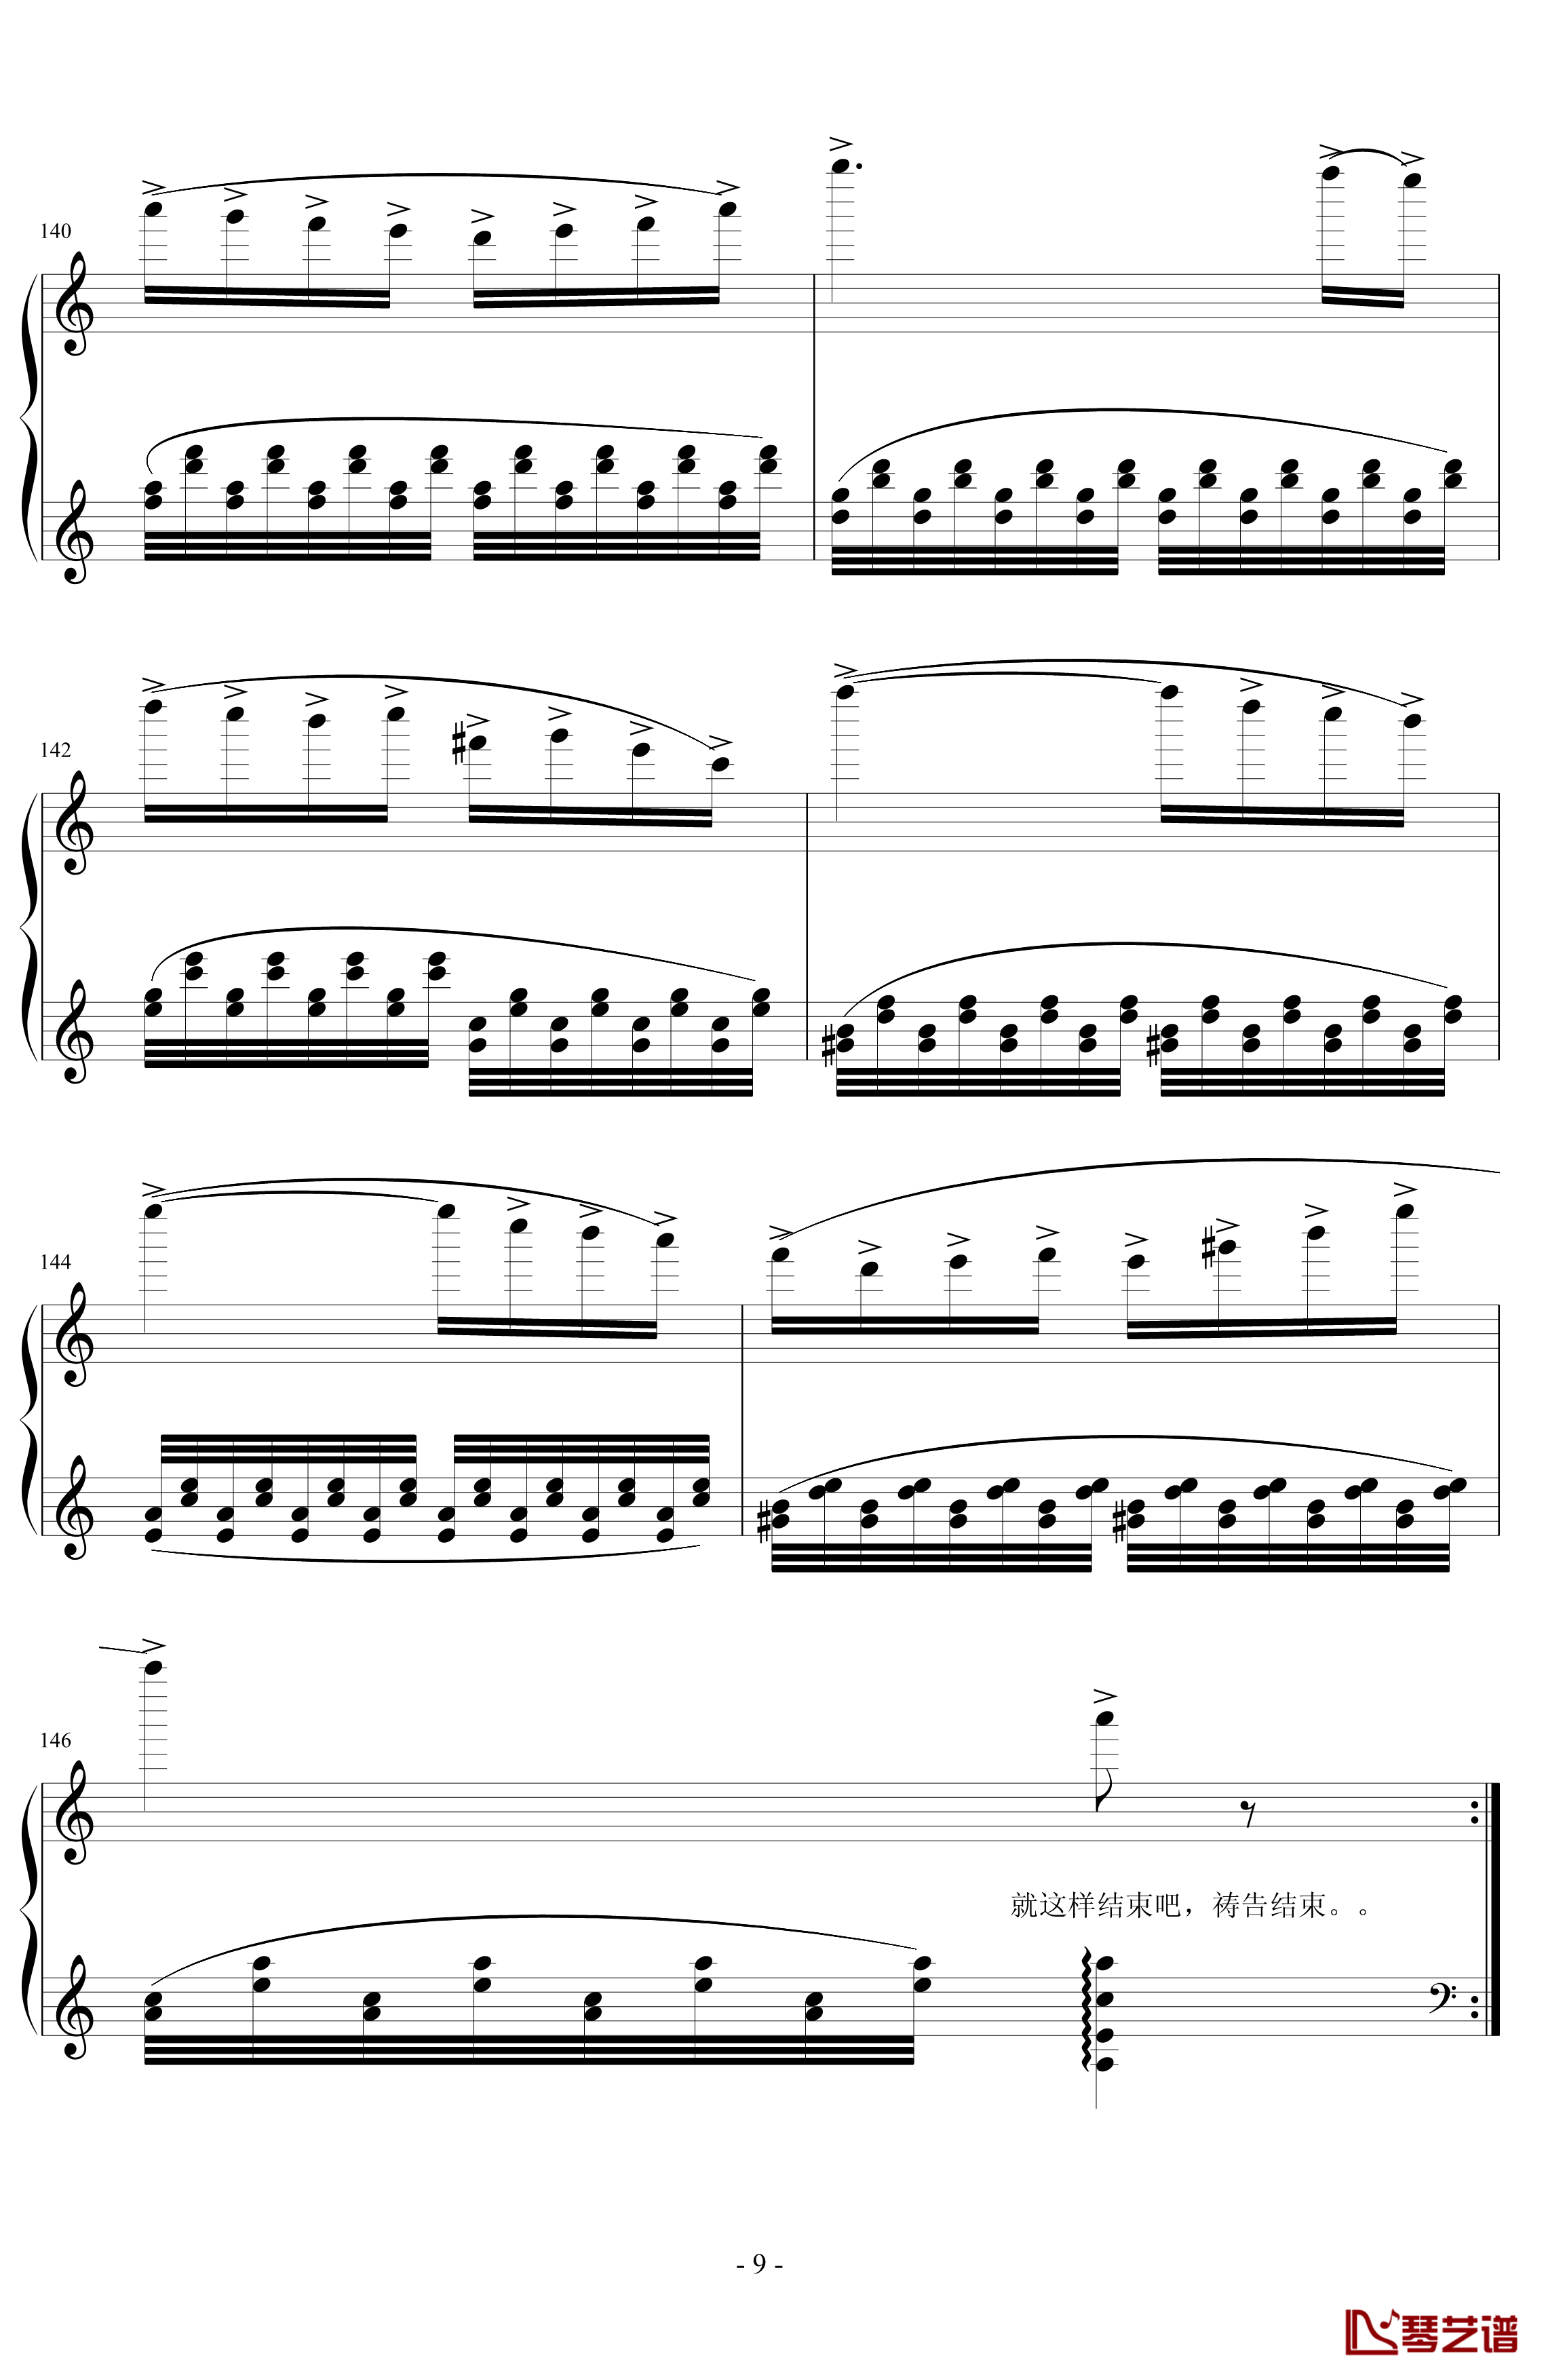 经典主题变奏曲钢琴谱-丁晓峰9